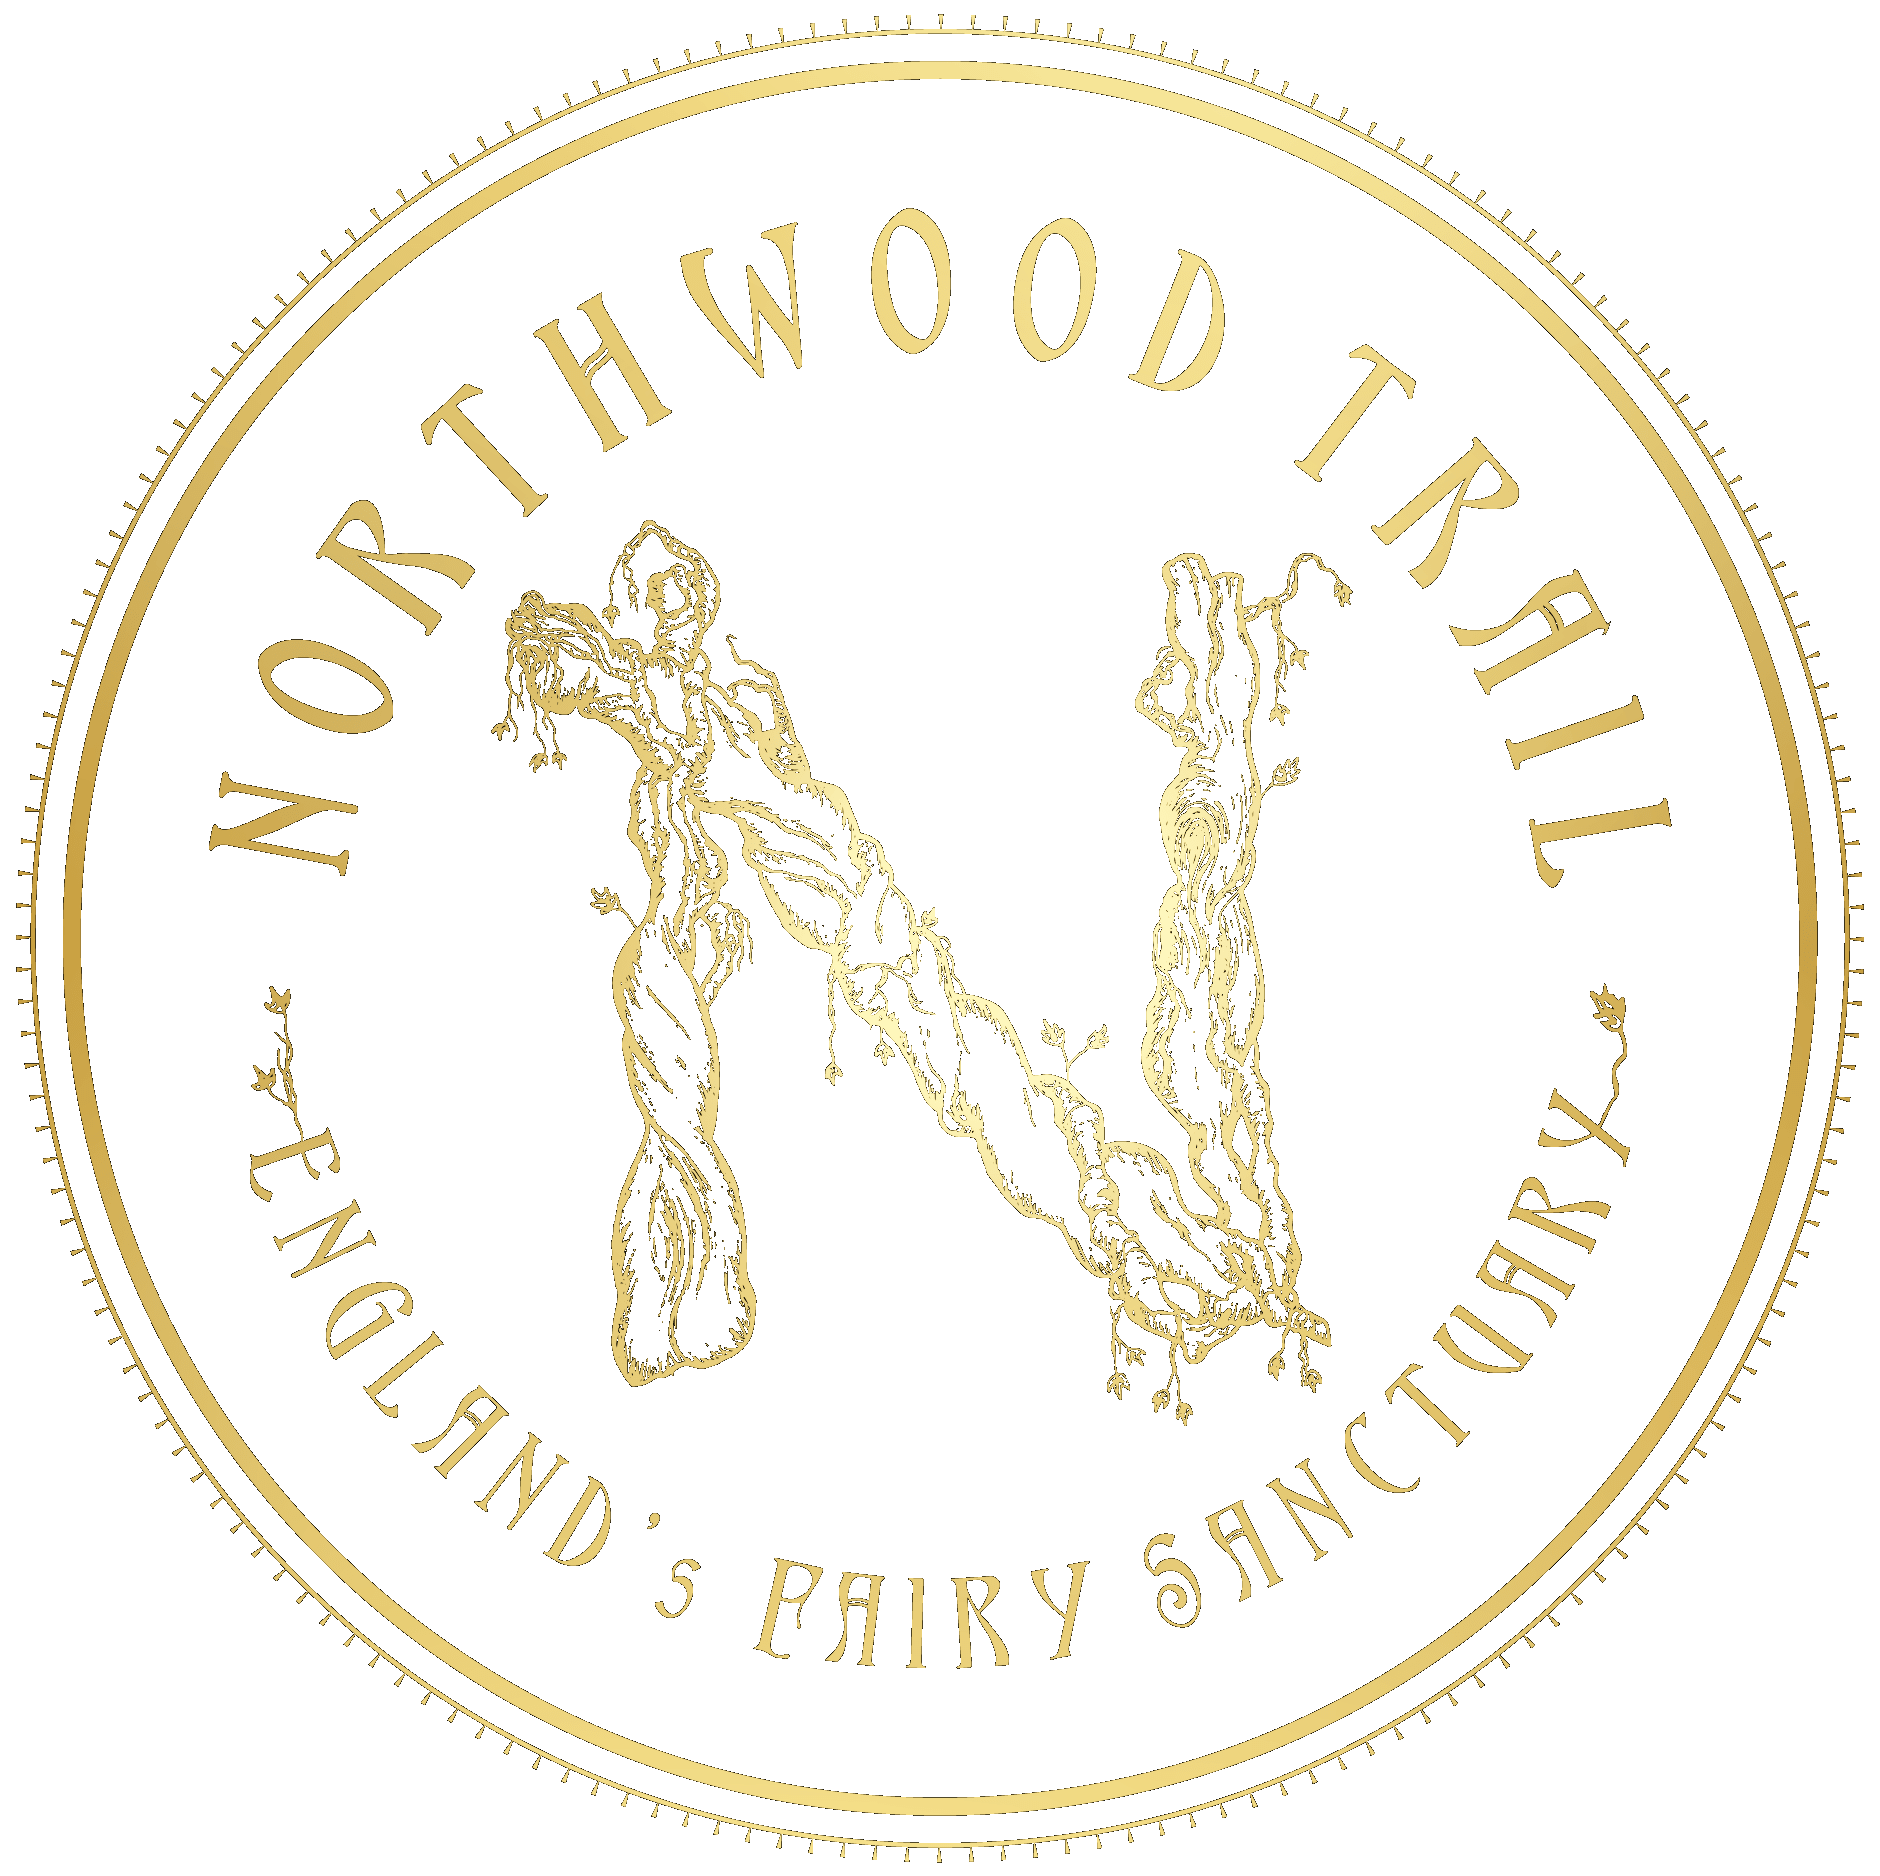 Sustainability, Biodynamic woodland York, Northwood trail